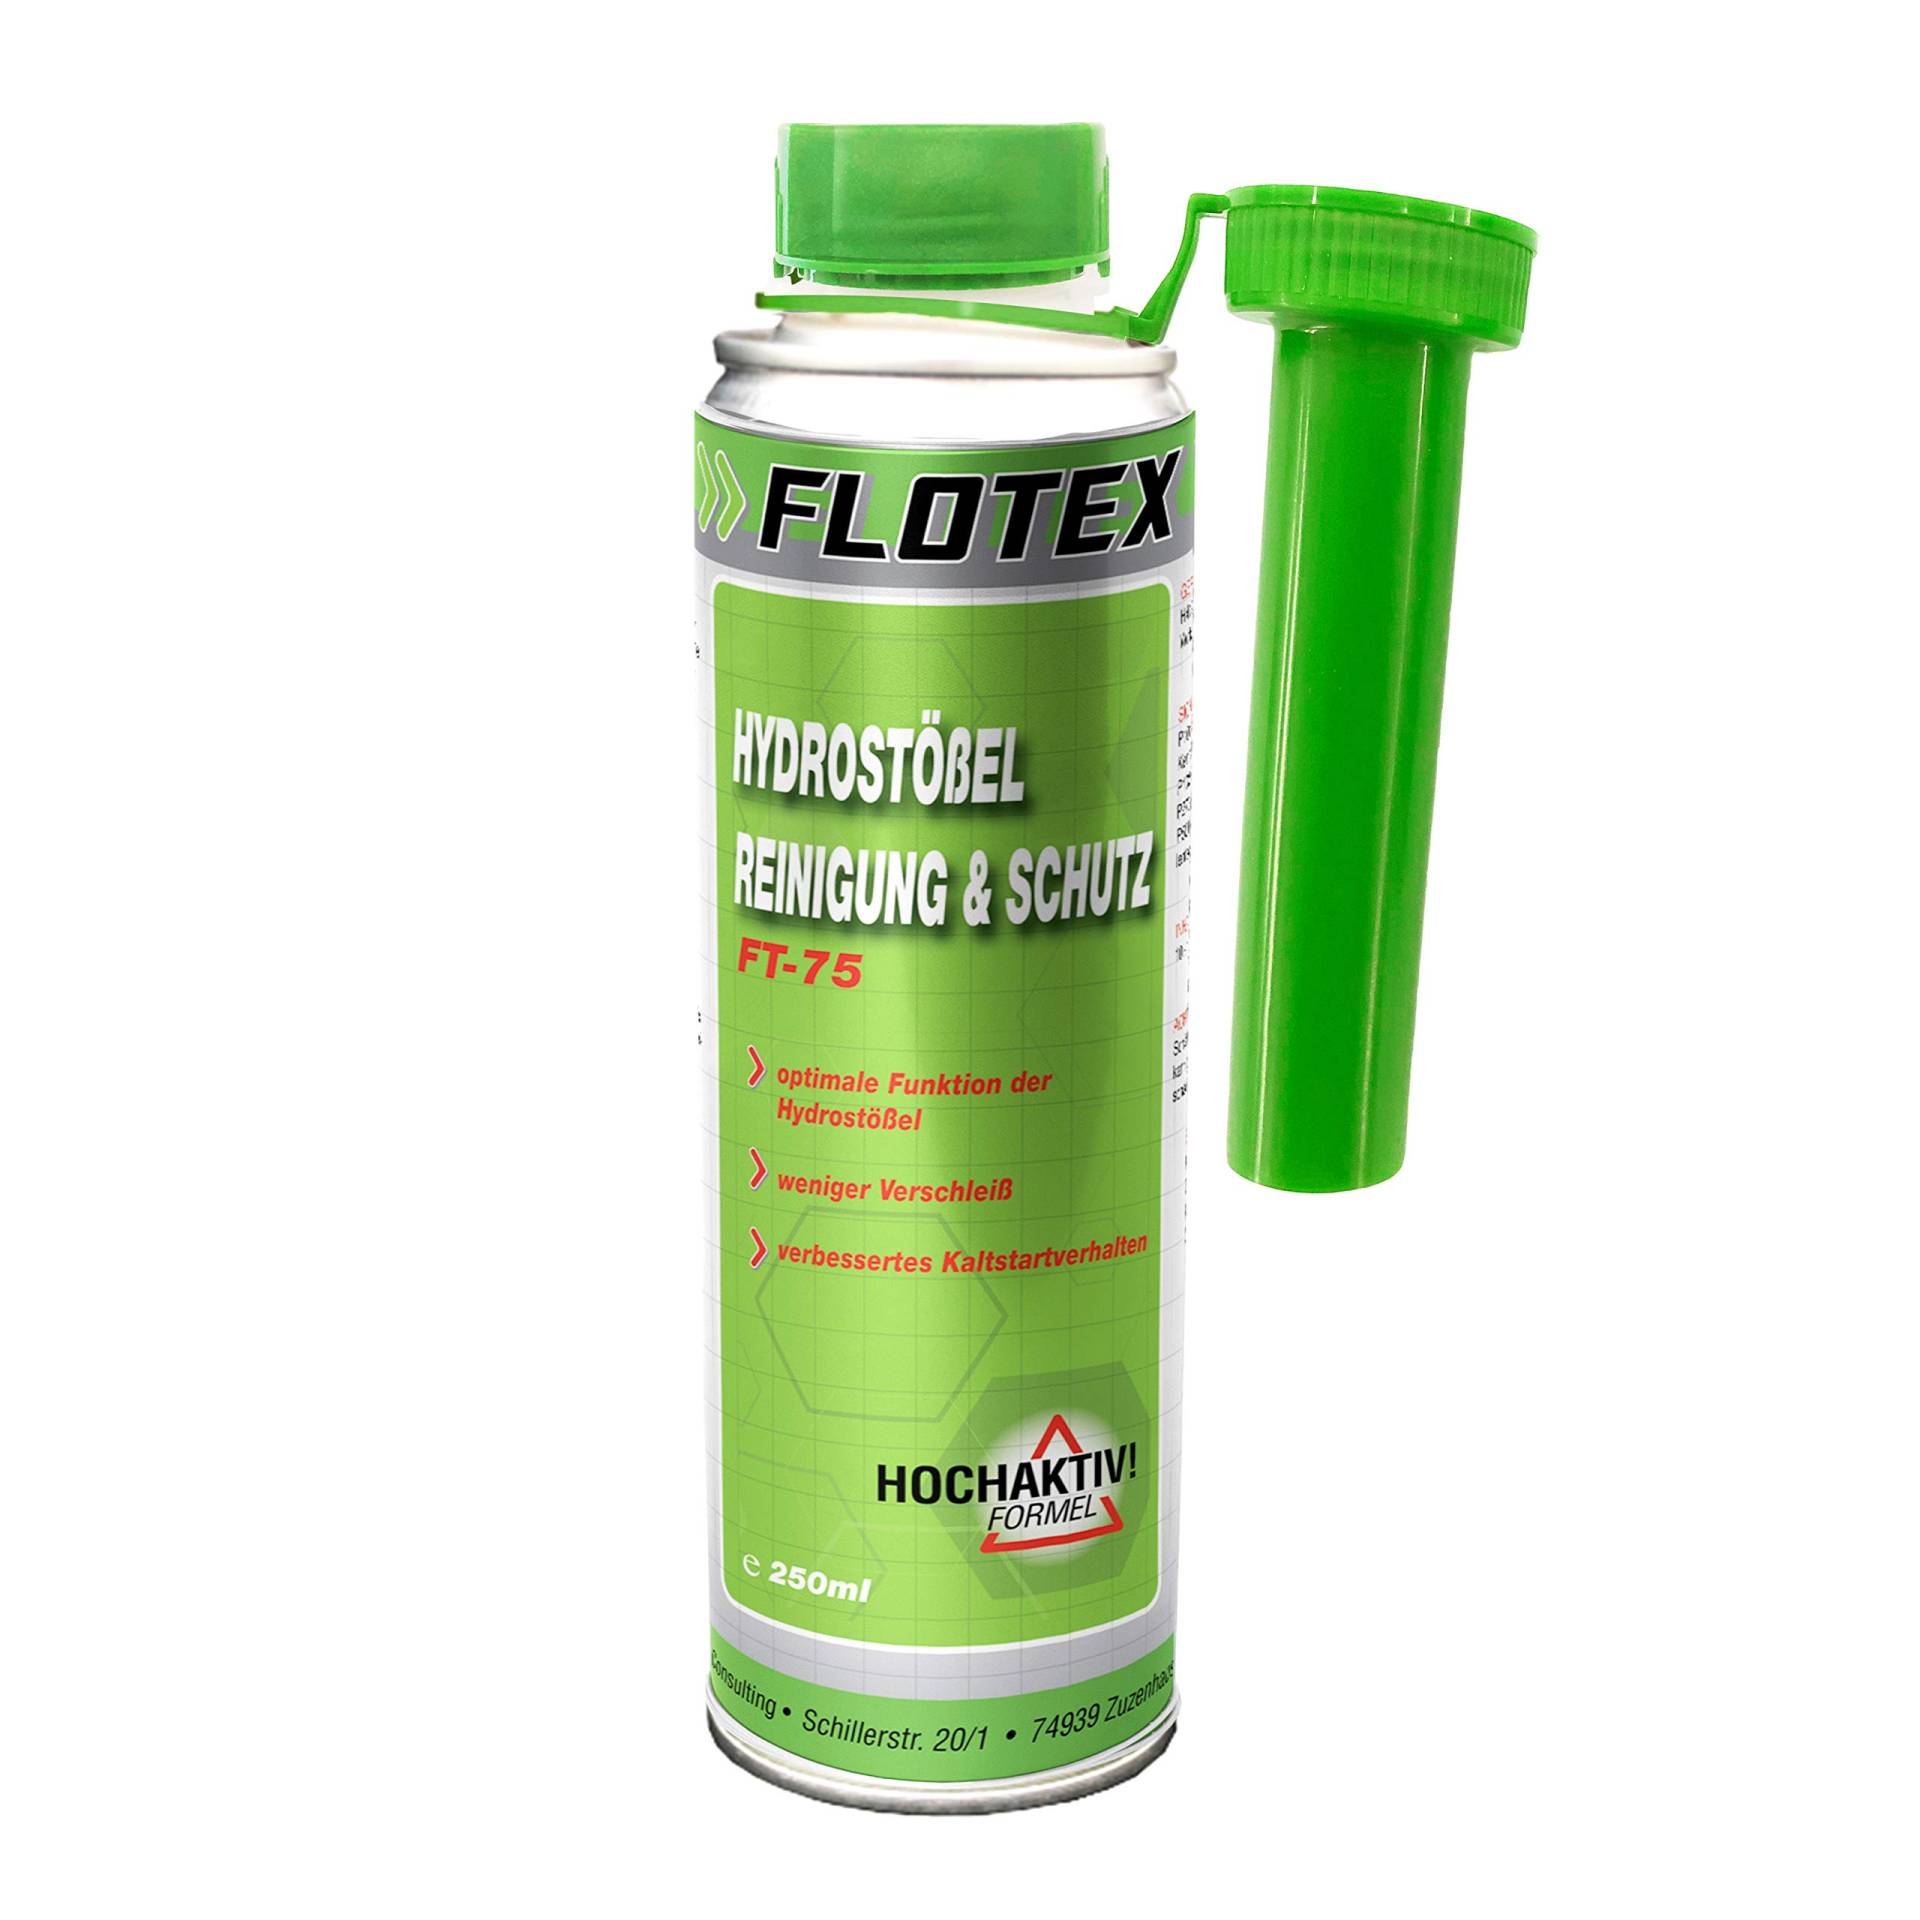 Flotex Hydrostößel Reinigung & Schutz, 250ml Additiv reinigt Ventilstößel von Flotex